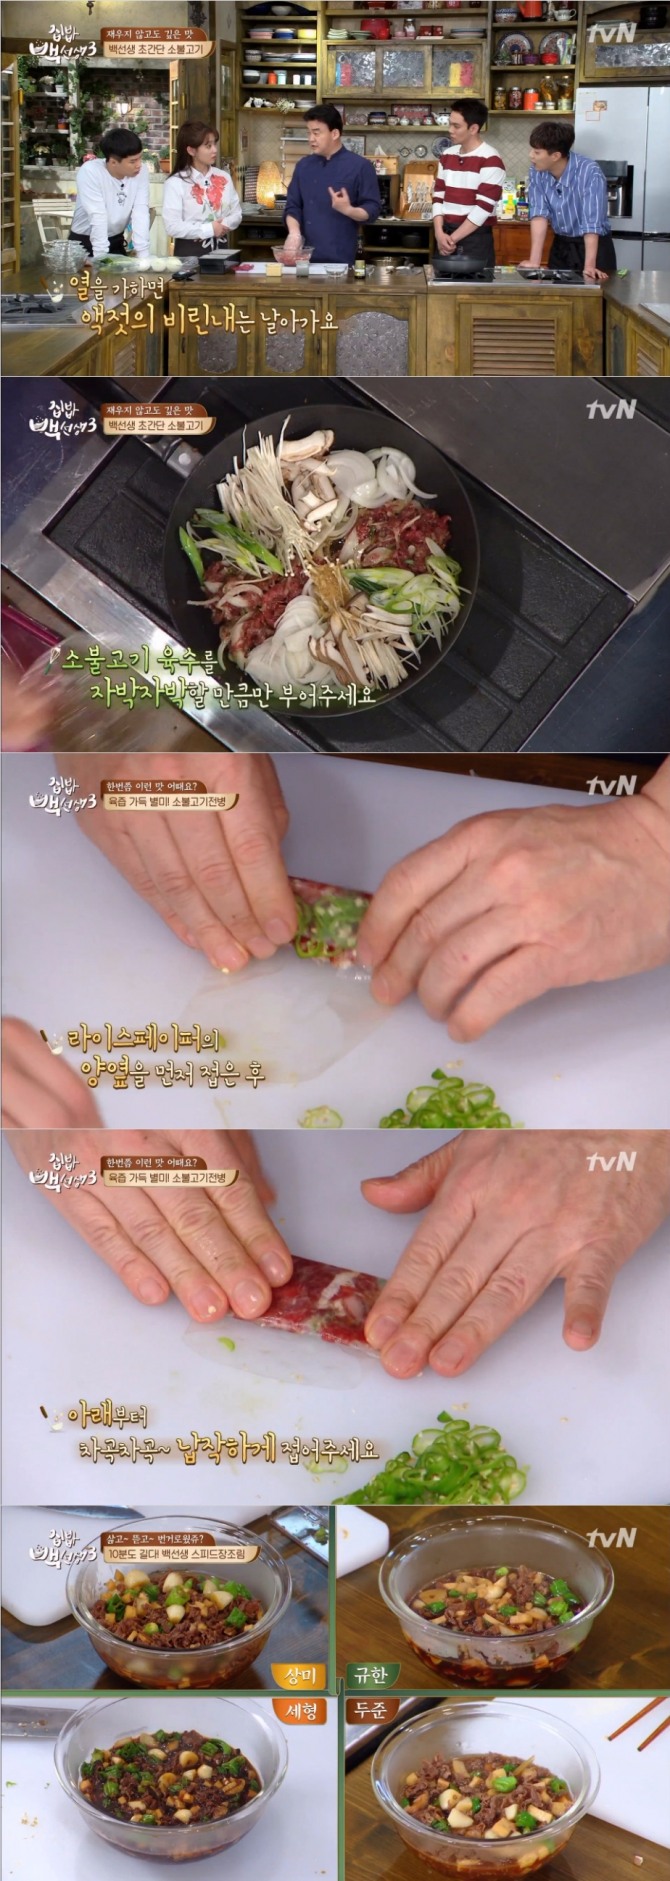 25일 방송된 tvN '집밥 백선생3'에서는 백종원이 액젓을 이용한 소불고기 레시피와 라이스페이퍼를 사용한 소불고기전병, 만능맛간장을 이용한 초스피드 장조림을 선보였다. 사진=tvN 방송 캡처